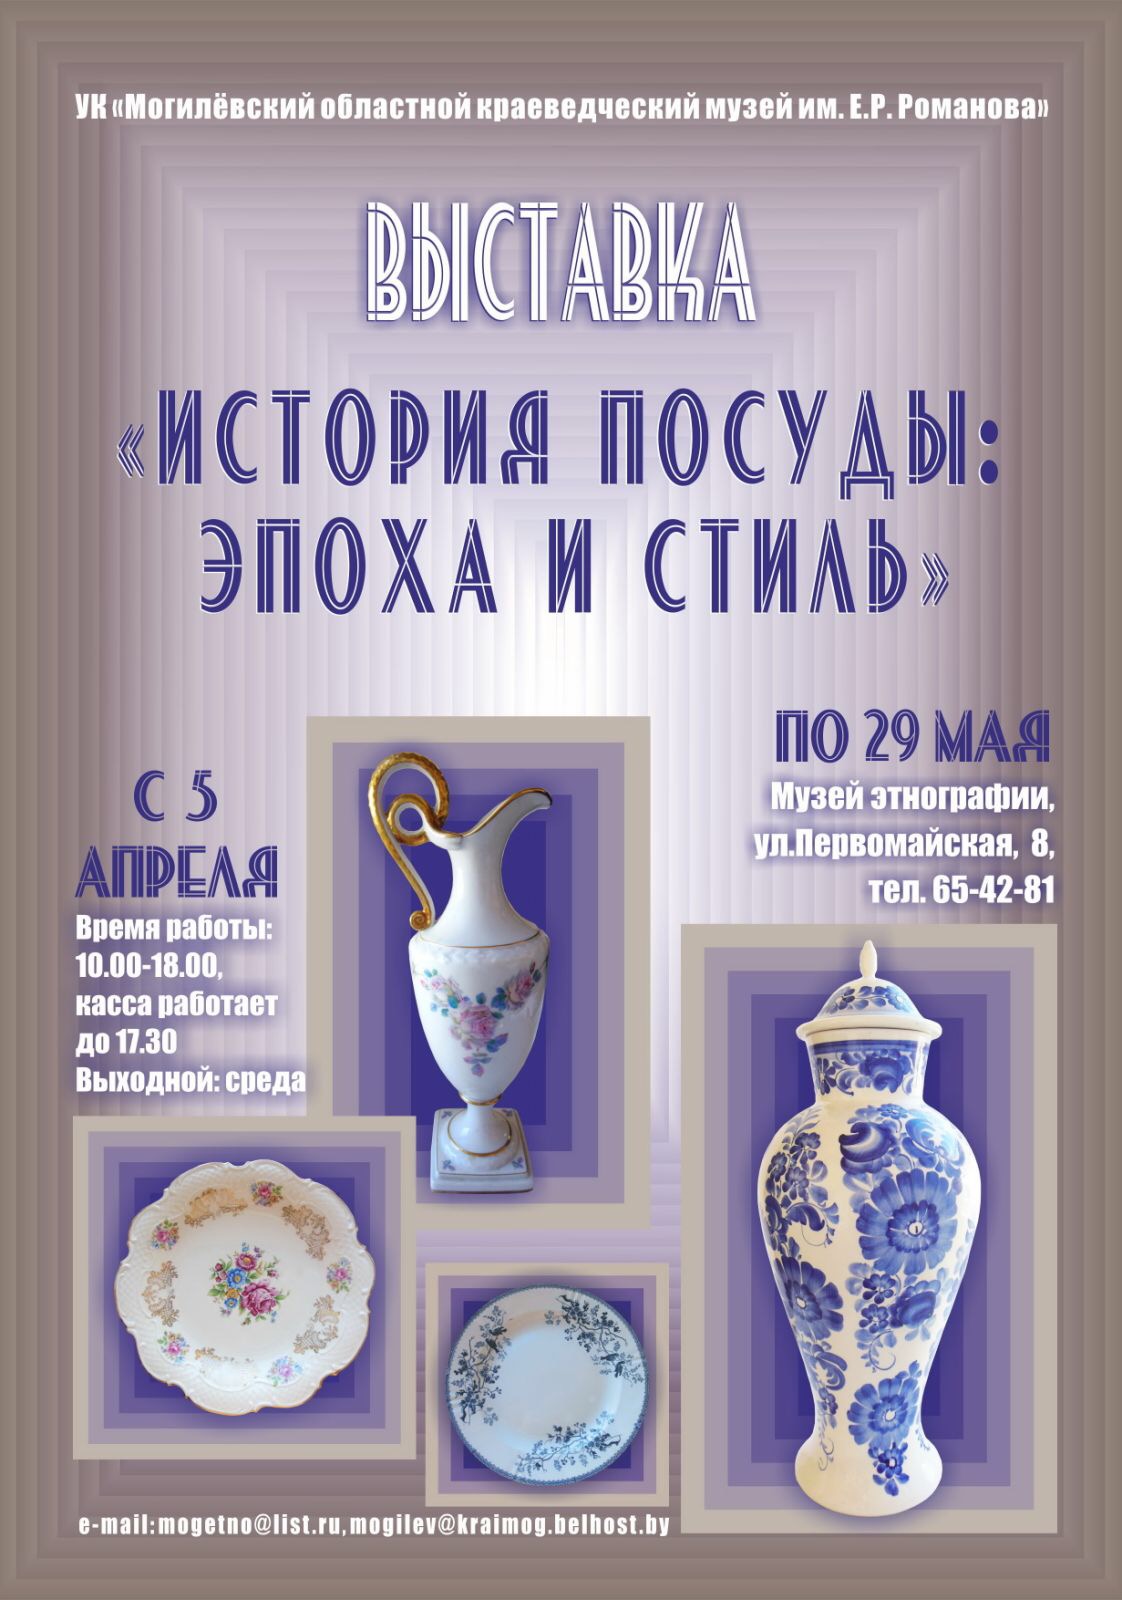 Выставка «История посуды: эпоха и стиль» готовится к открытию в Могилеве